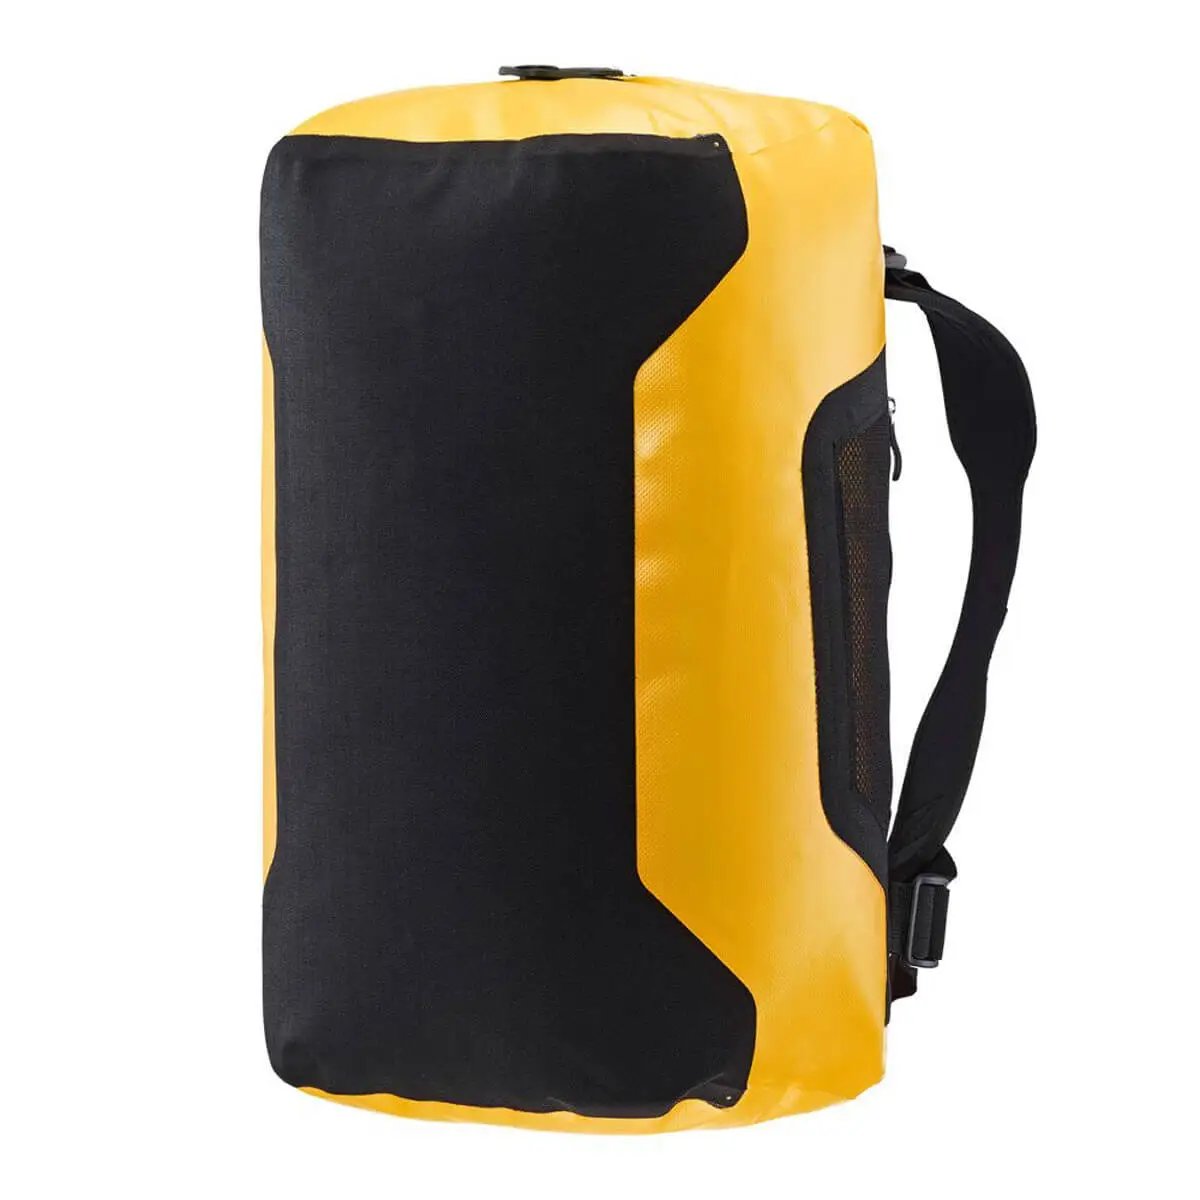 Ortlieb Duffle 40L Waterproof Travel Bag - John Bull Clothing